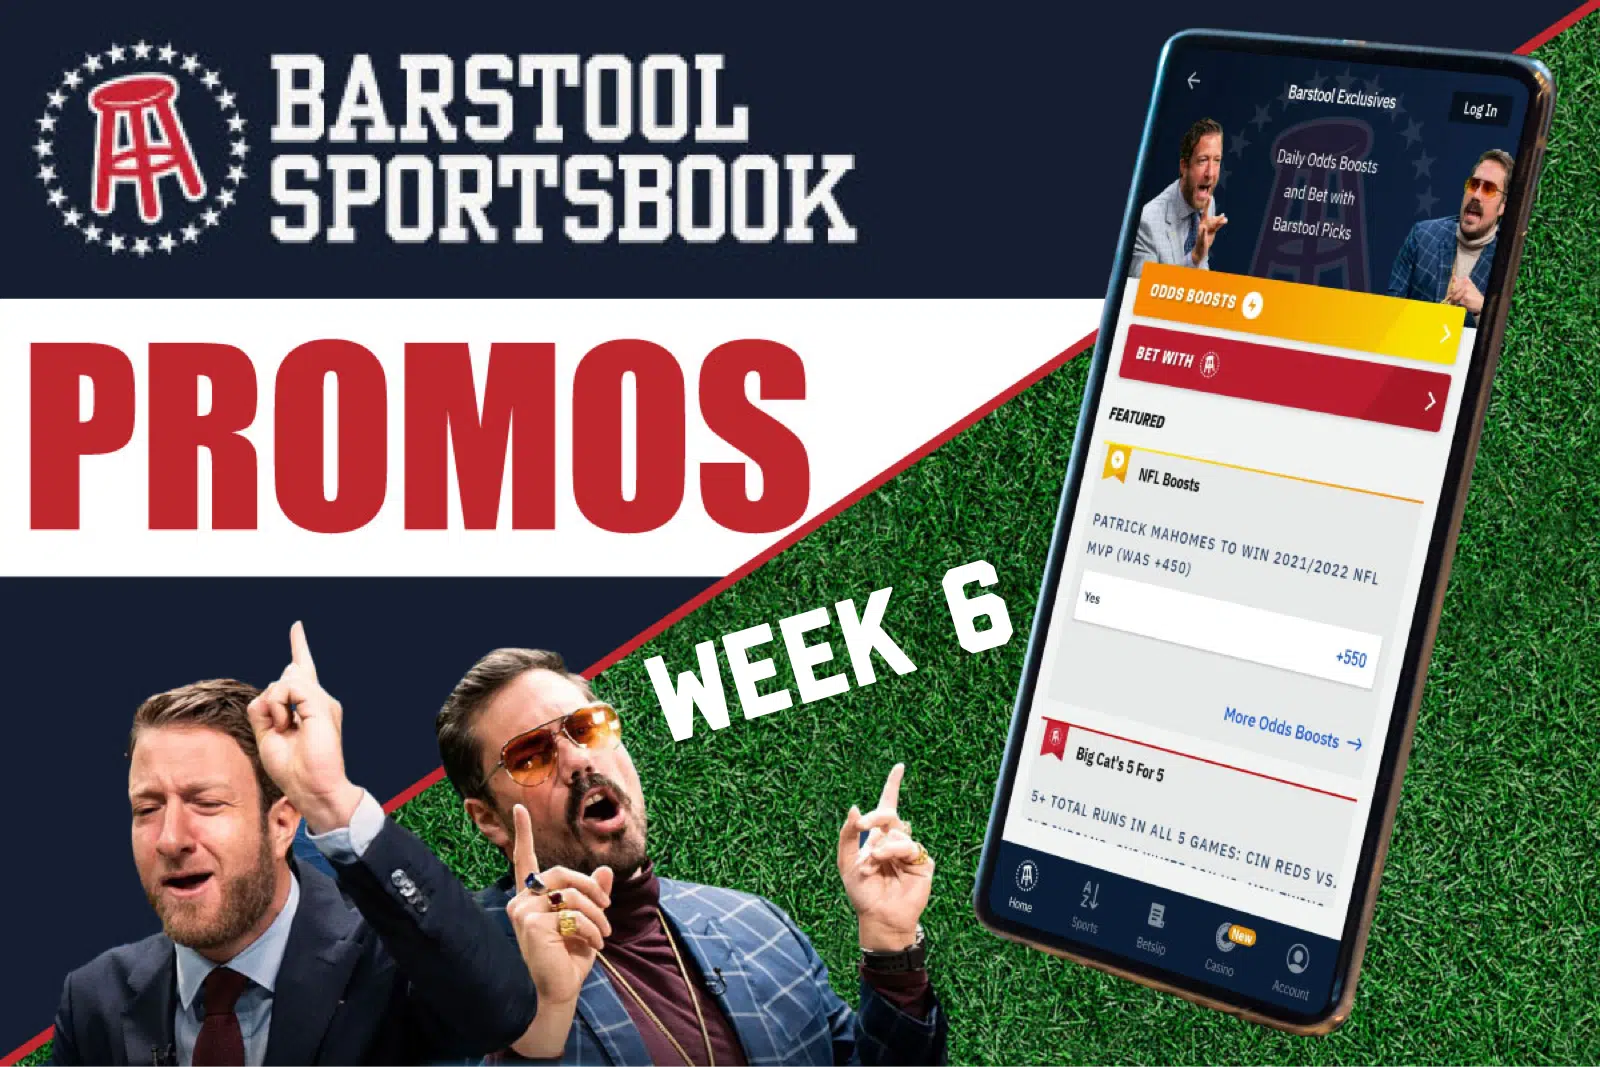 barstool sportsbook promo nfl week 6